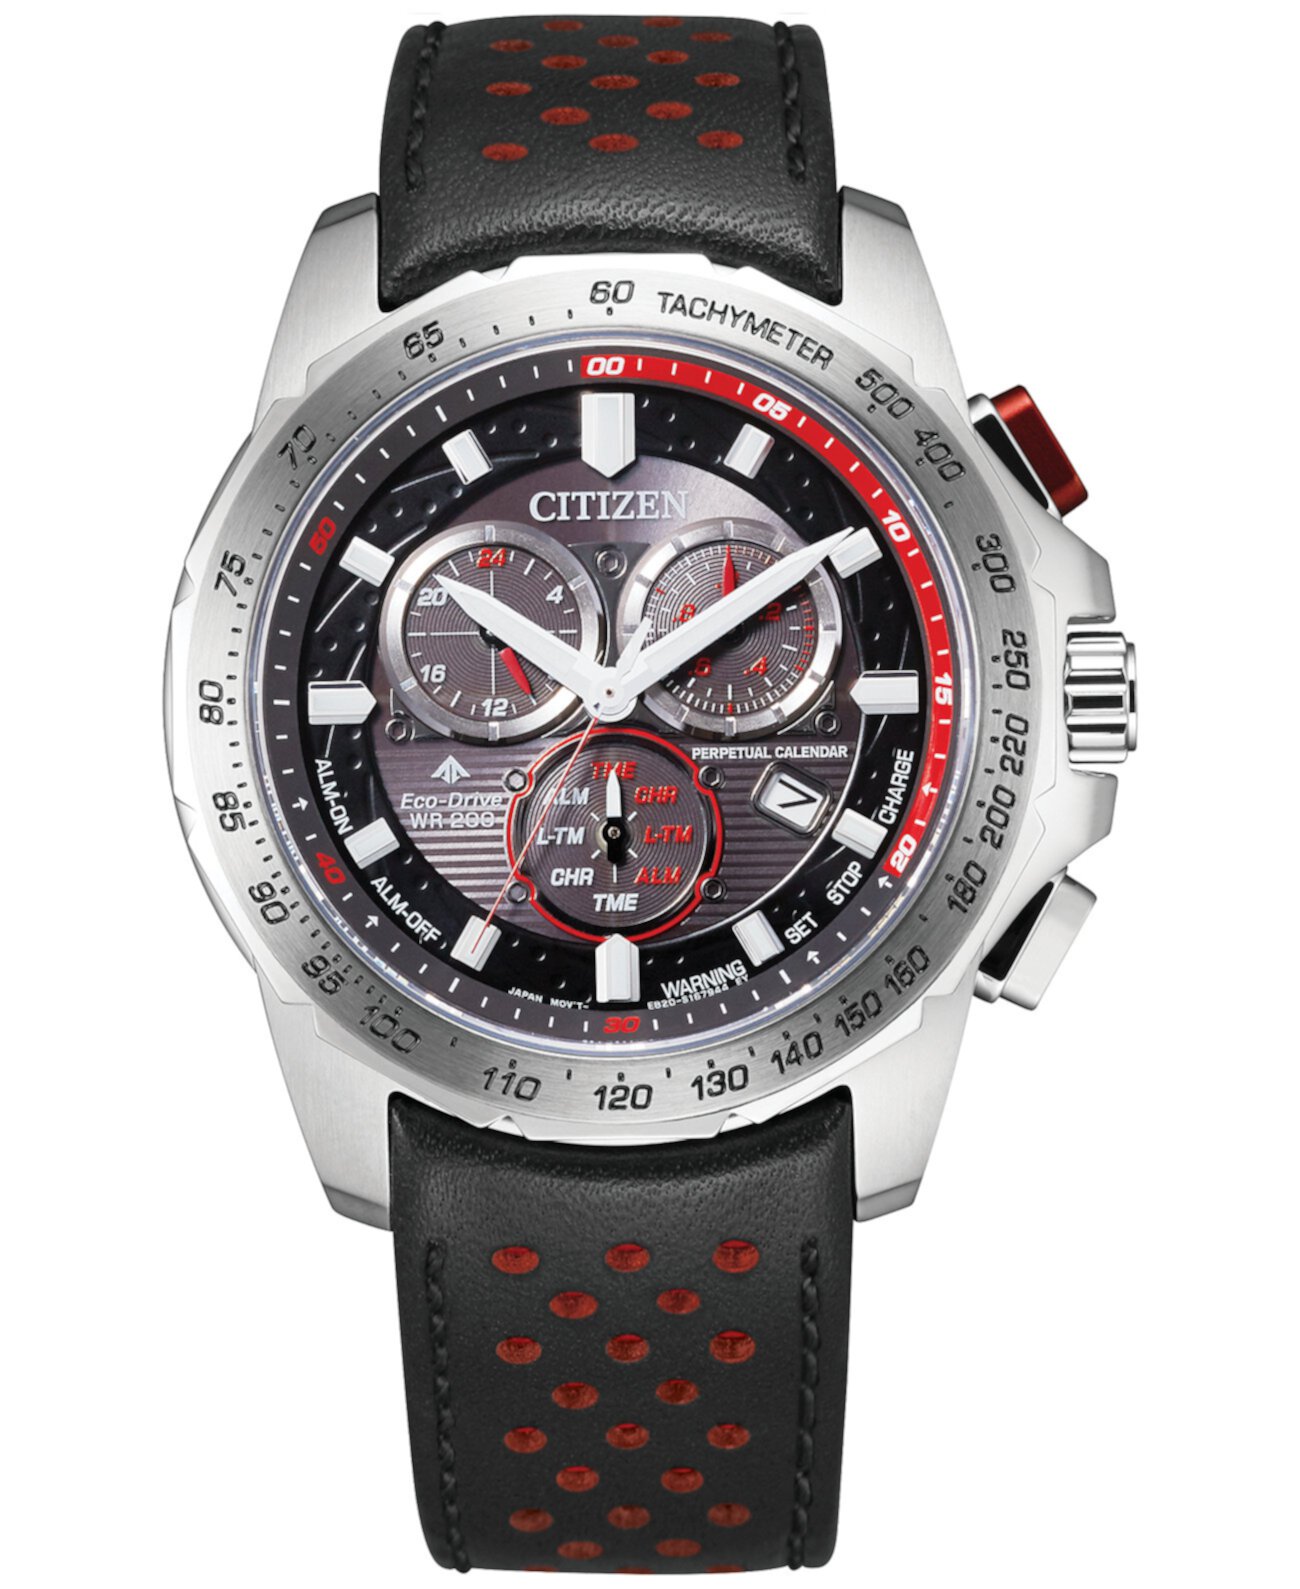 Мужские часы Eco-Drive с хронографом Promaster Land с черным и красным кожаным ремешком, 43 мм Citizen